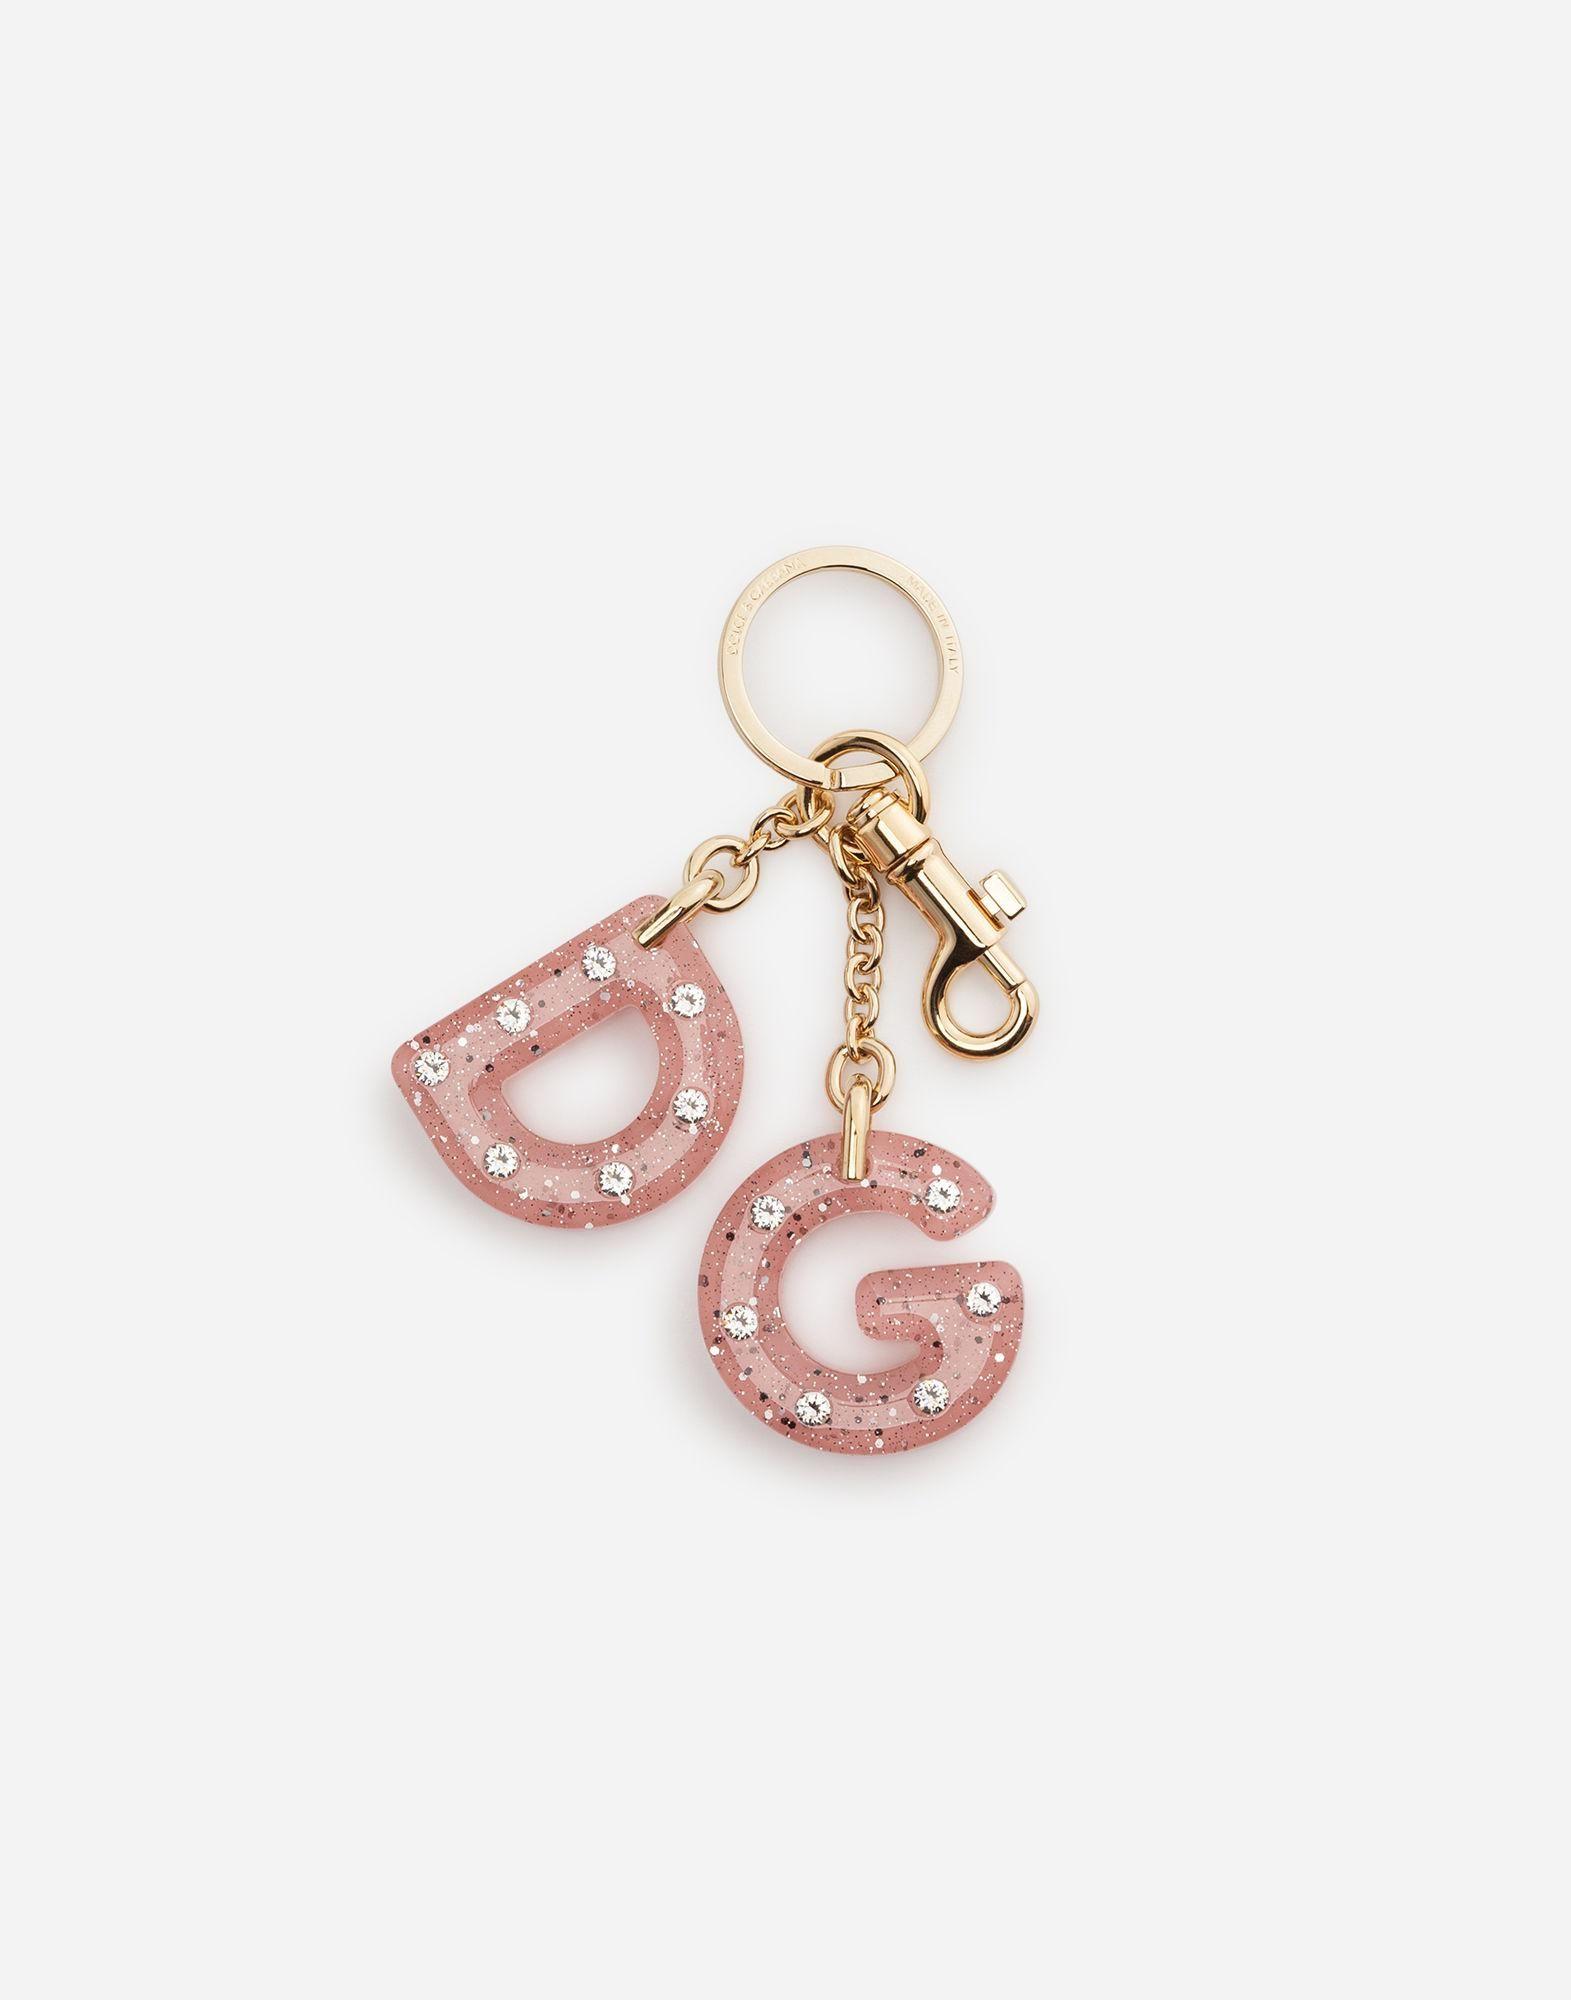 Dolce and Gabanna Logo - Lyst & Gabbana Dg Logo Keychain in Pink